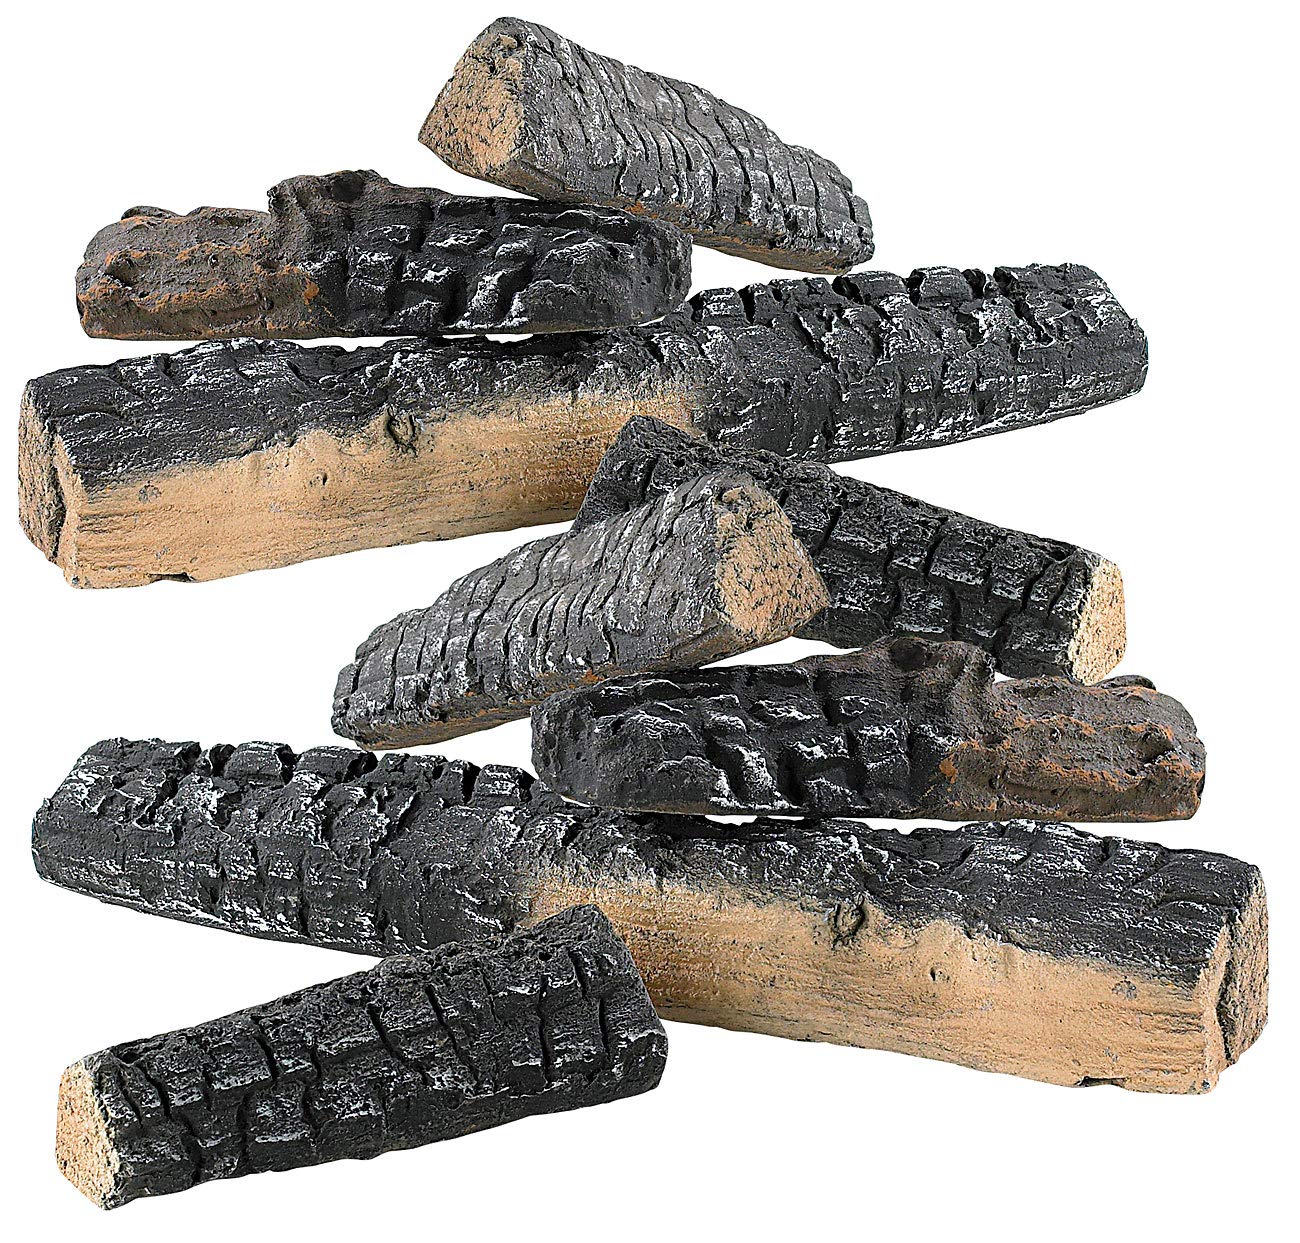 Carlo Milano Keramikholzscheite: 8er-Set Keramik-Dekorations-Holzscheite für Bioethanol-Öfen (Keramikholz für Gaskamin, Keramikholz für Ethanol Kamin, Feuerschale)